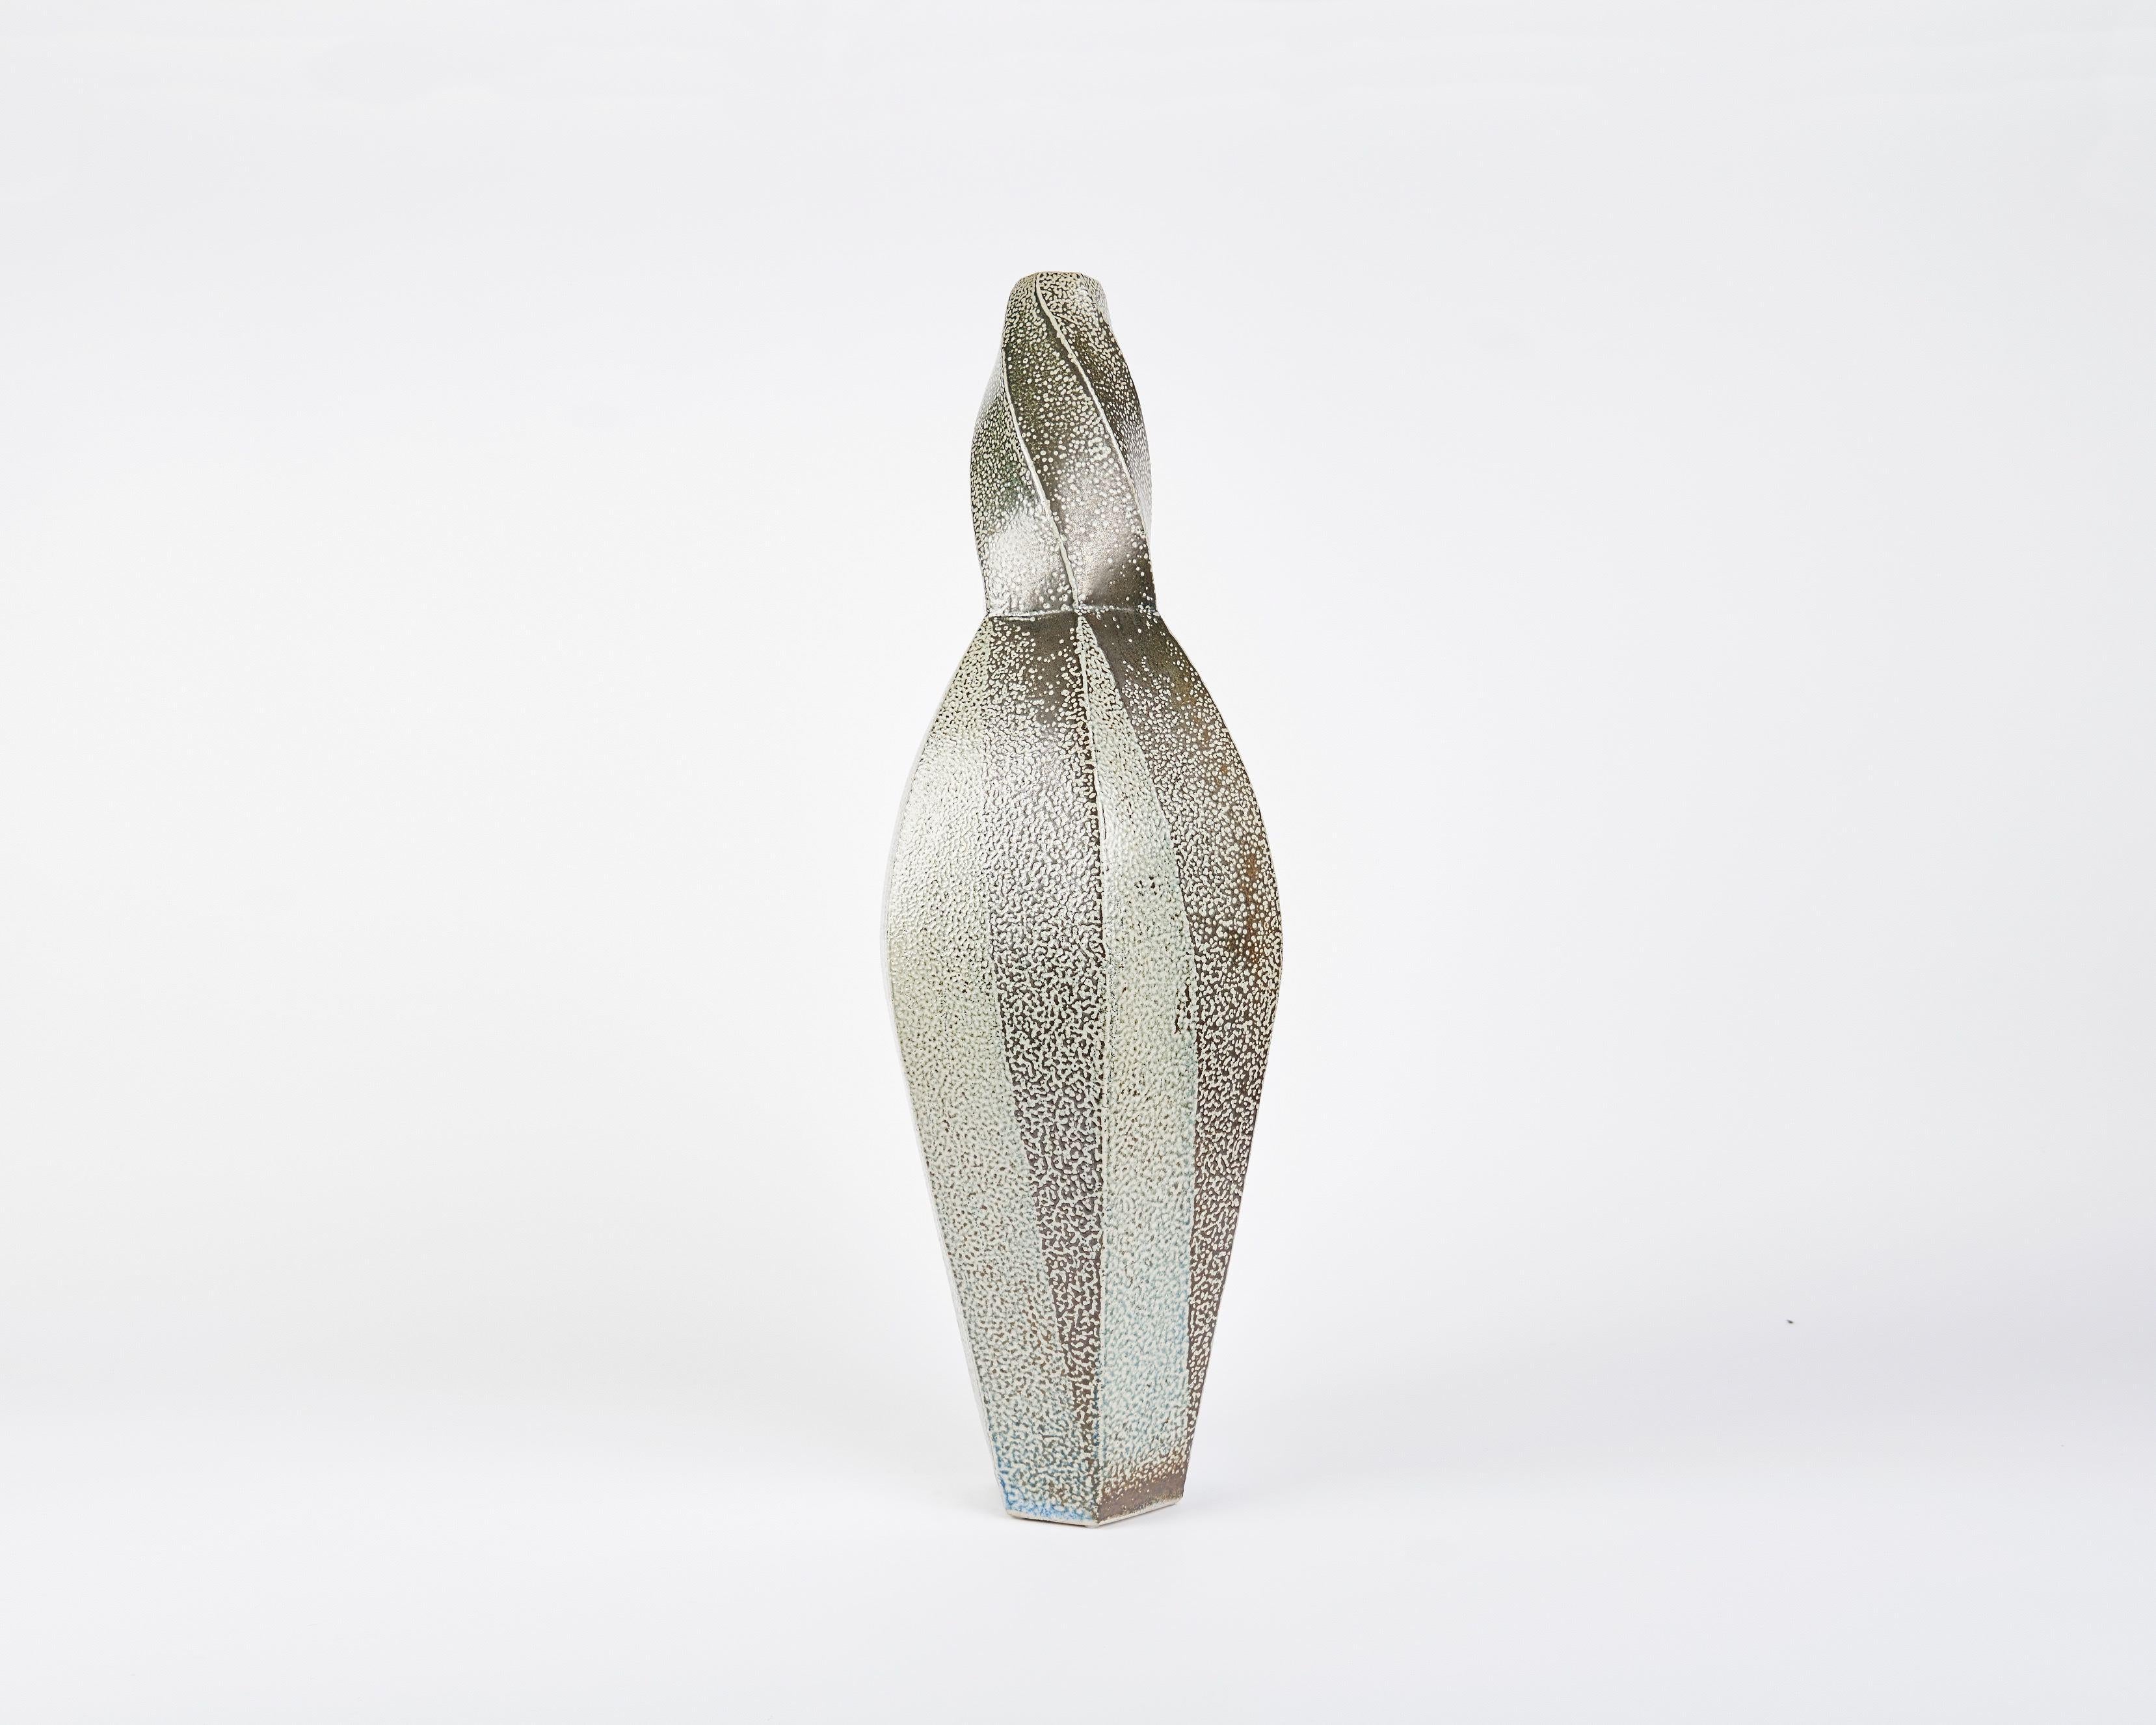 Diese gedrehte, facettierte Vase des zeitgenössischen dänischen Keramikers Aage Birck besitzt eine für das Medium einzigartige Festigkeit und Textur.